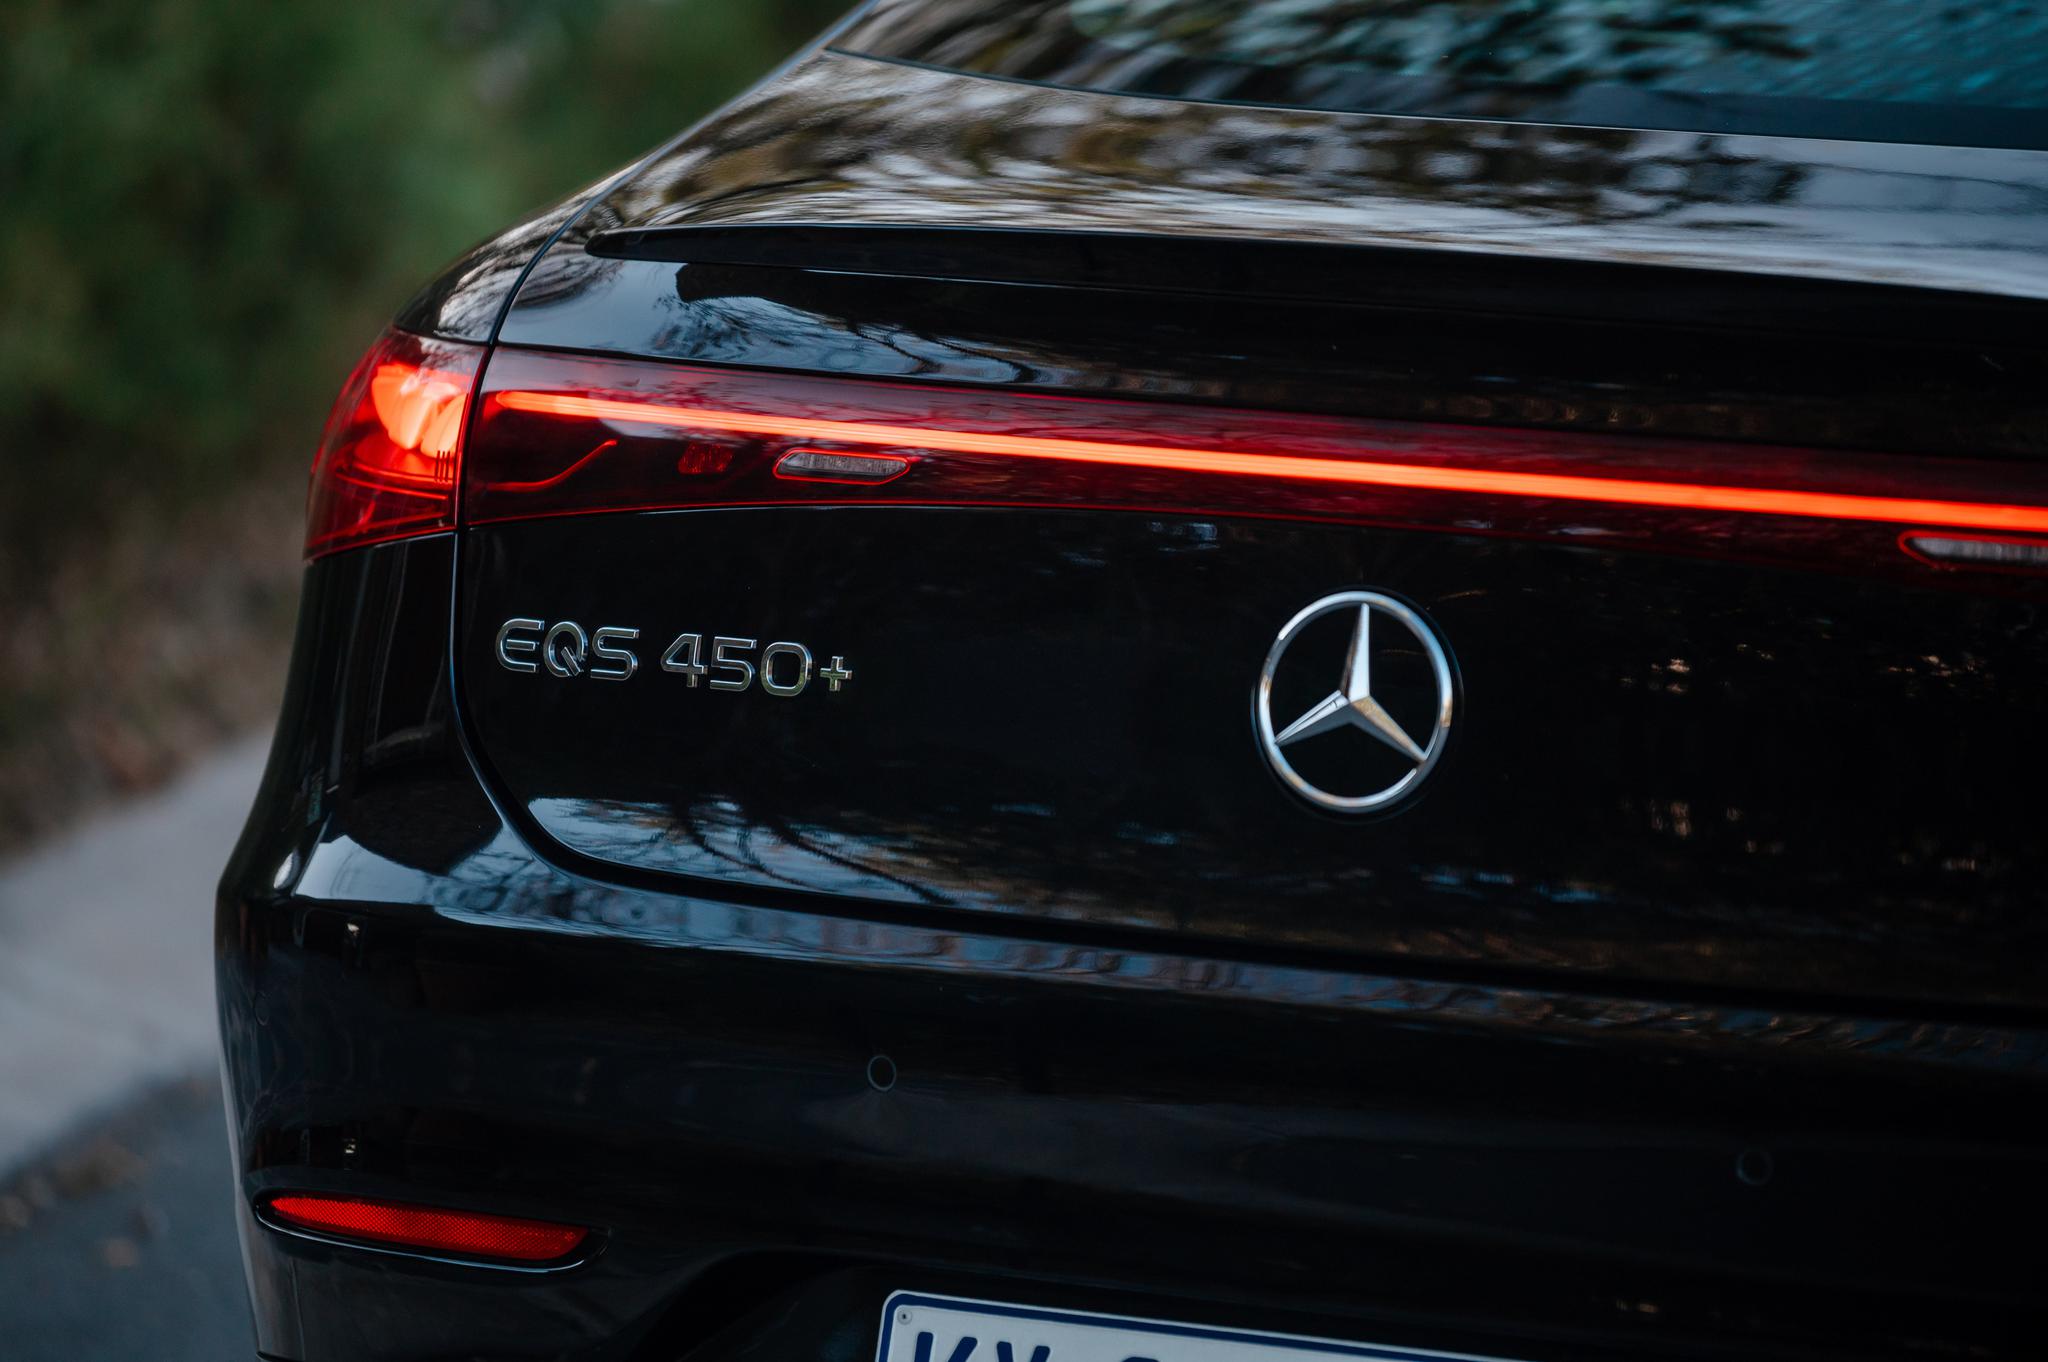 The Mercedes-Benz EQS